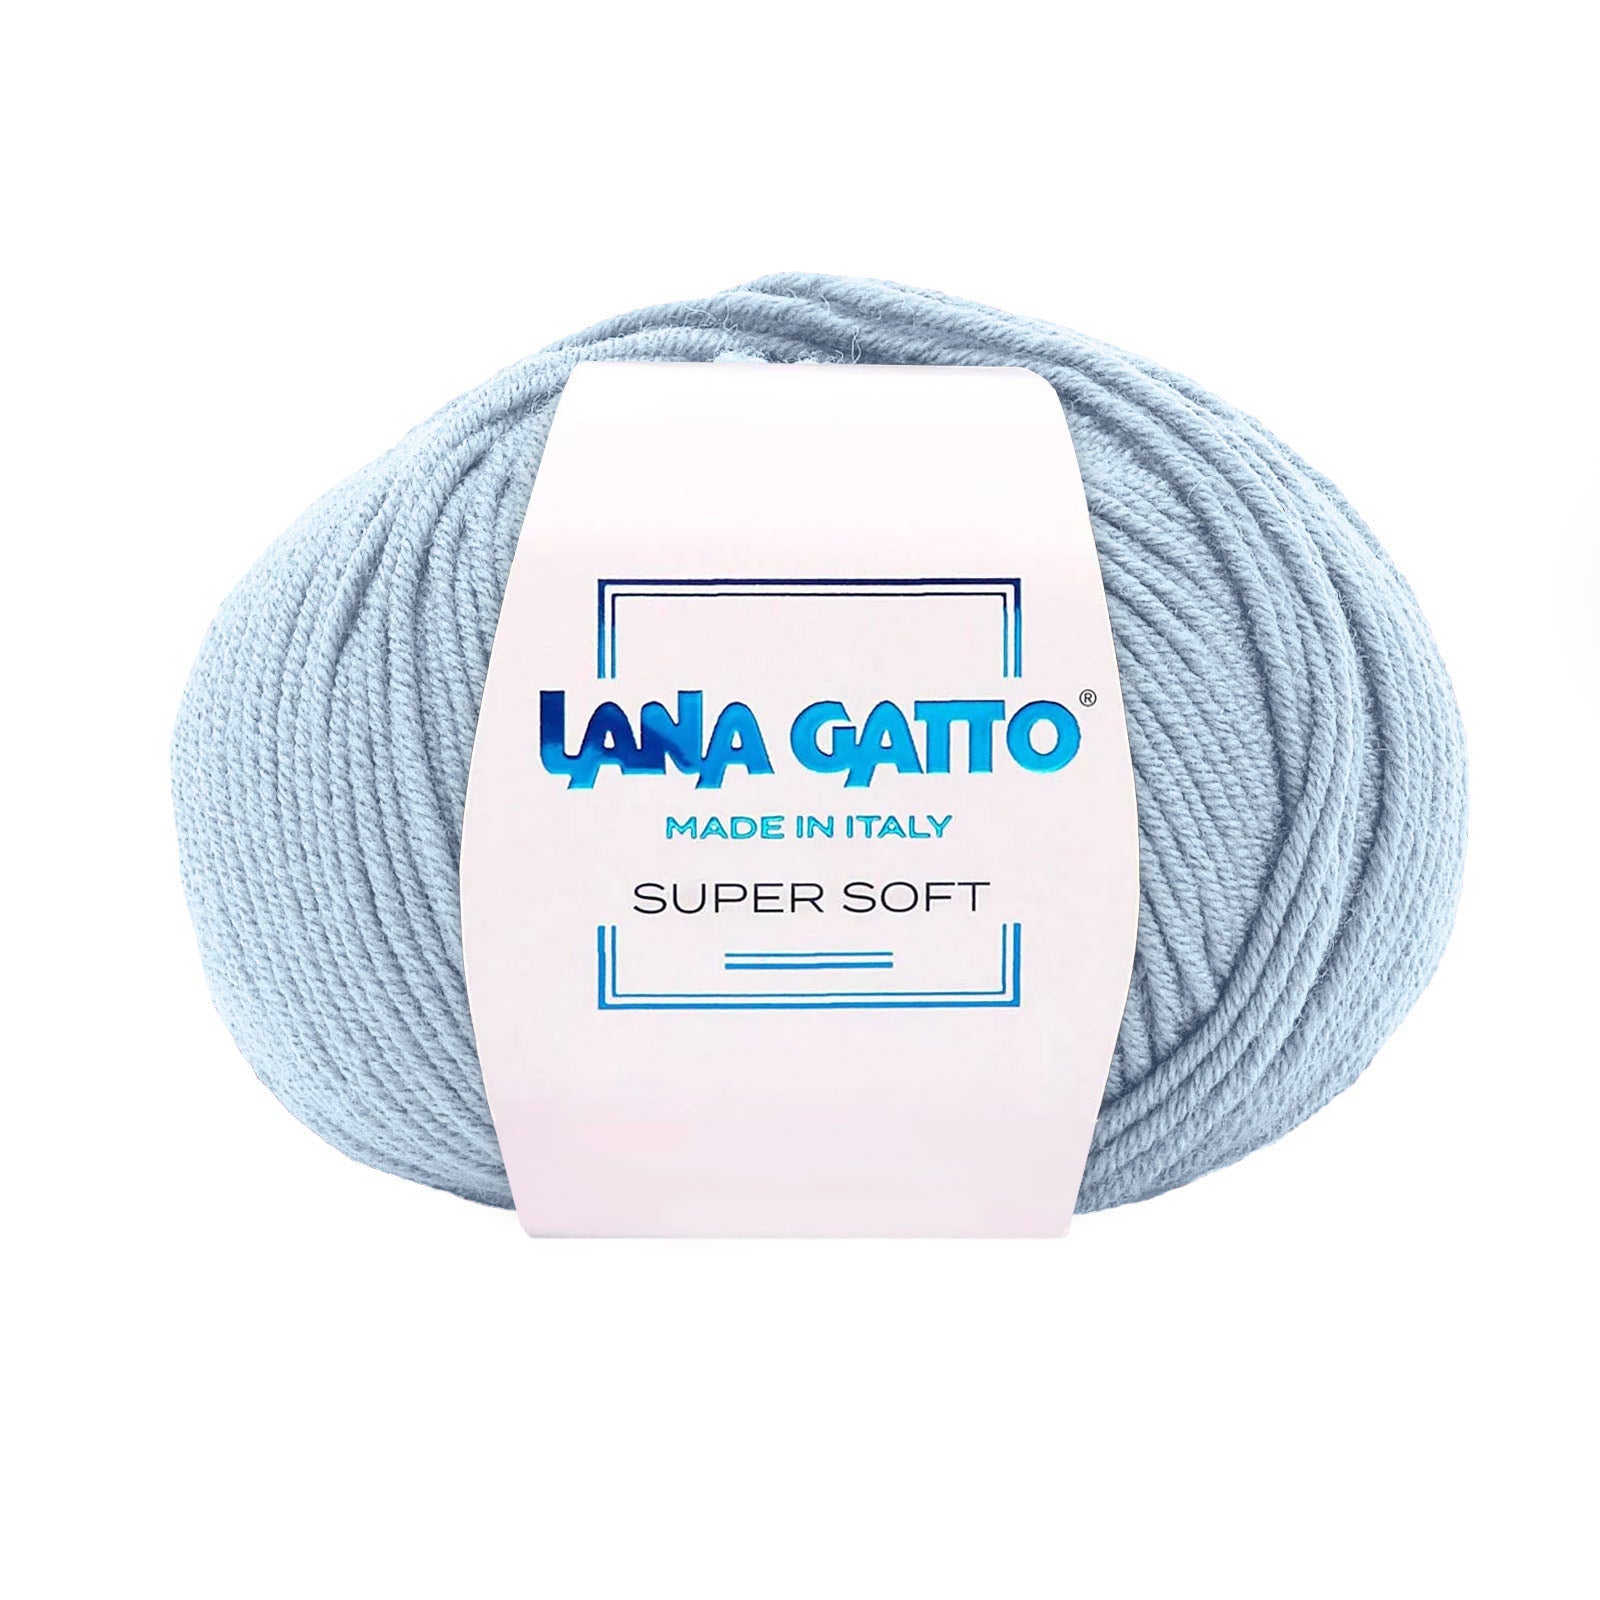 Gomitolo 100% Pura Lana Vergine Merino Extrafine Lana Gatto Linea Super Soft - Tonalità Blu - Azzurro - 14342 - Gomitolo